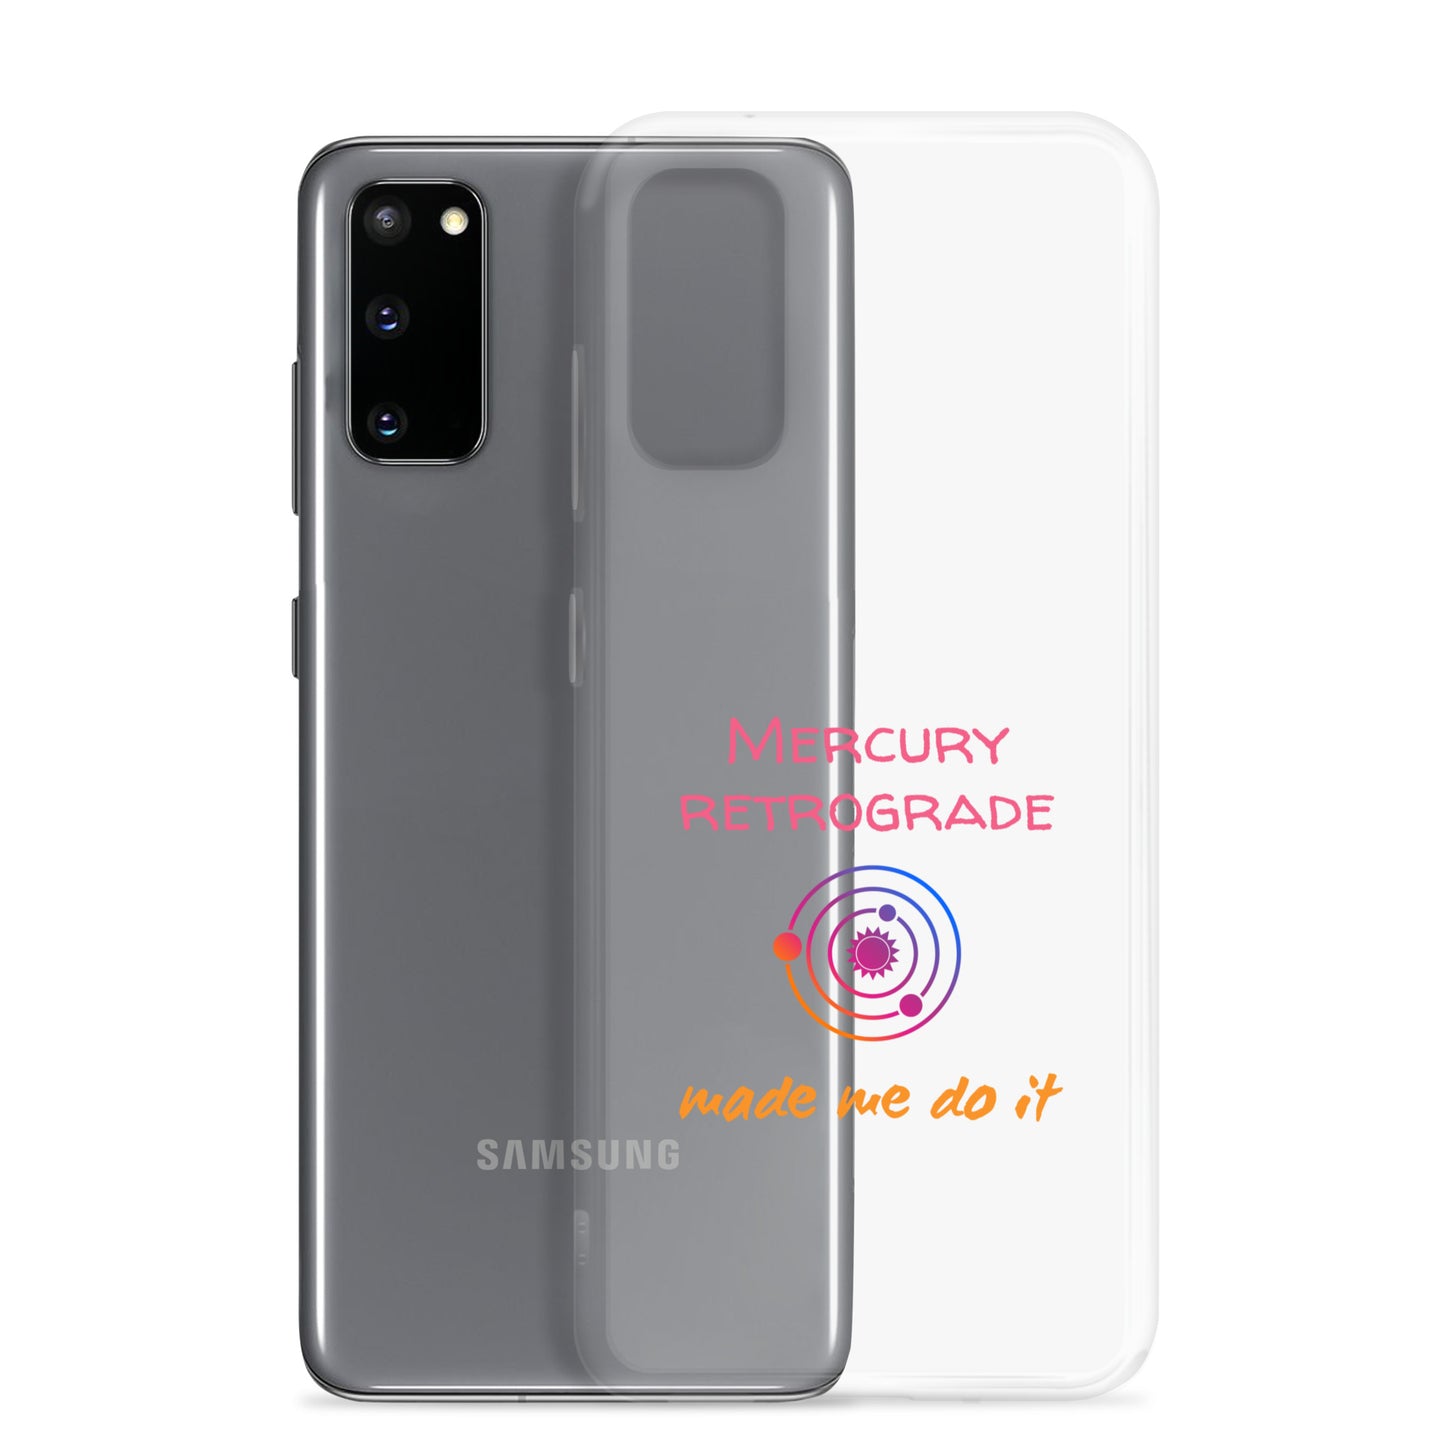 Mercury retrograde made me do it, Case for Samsung®